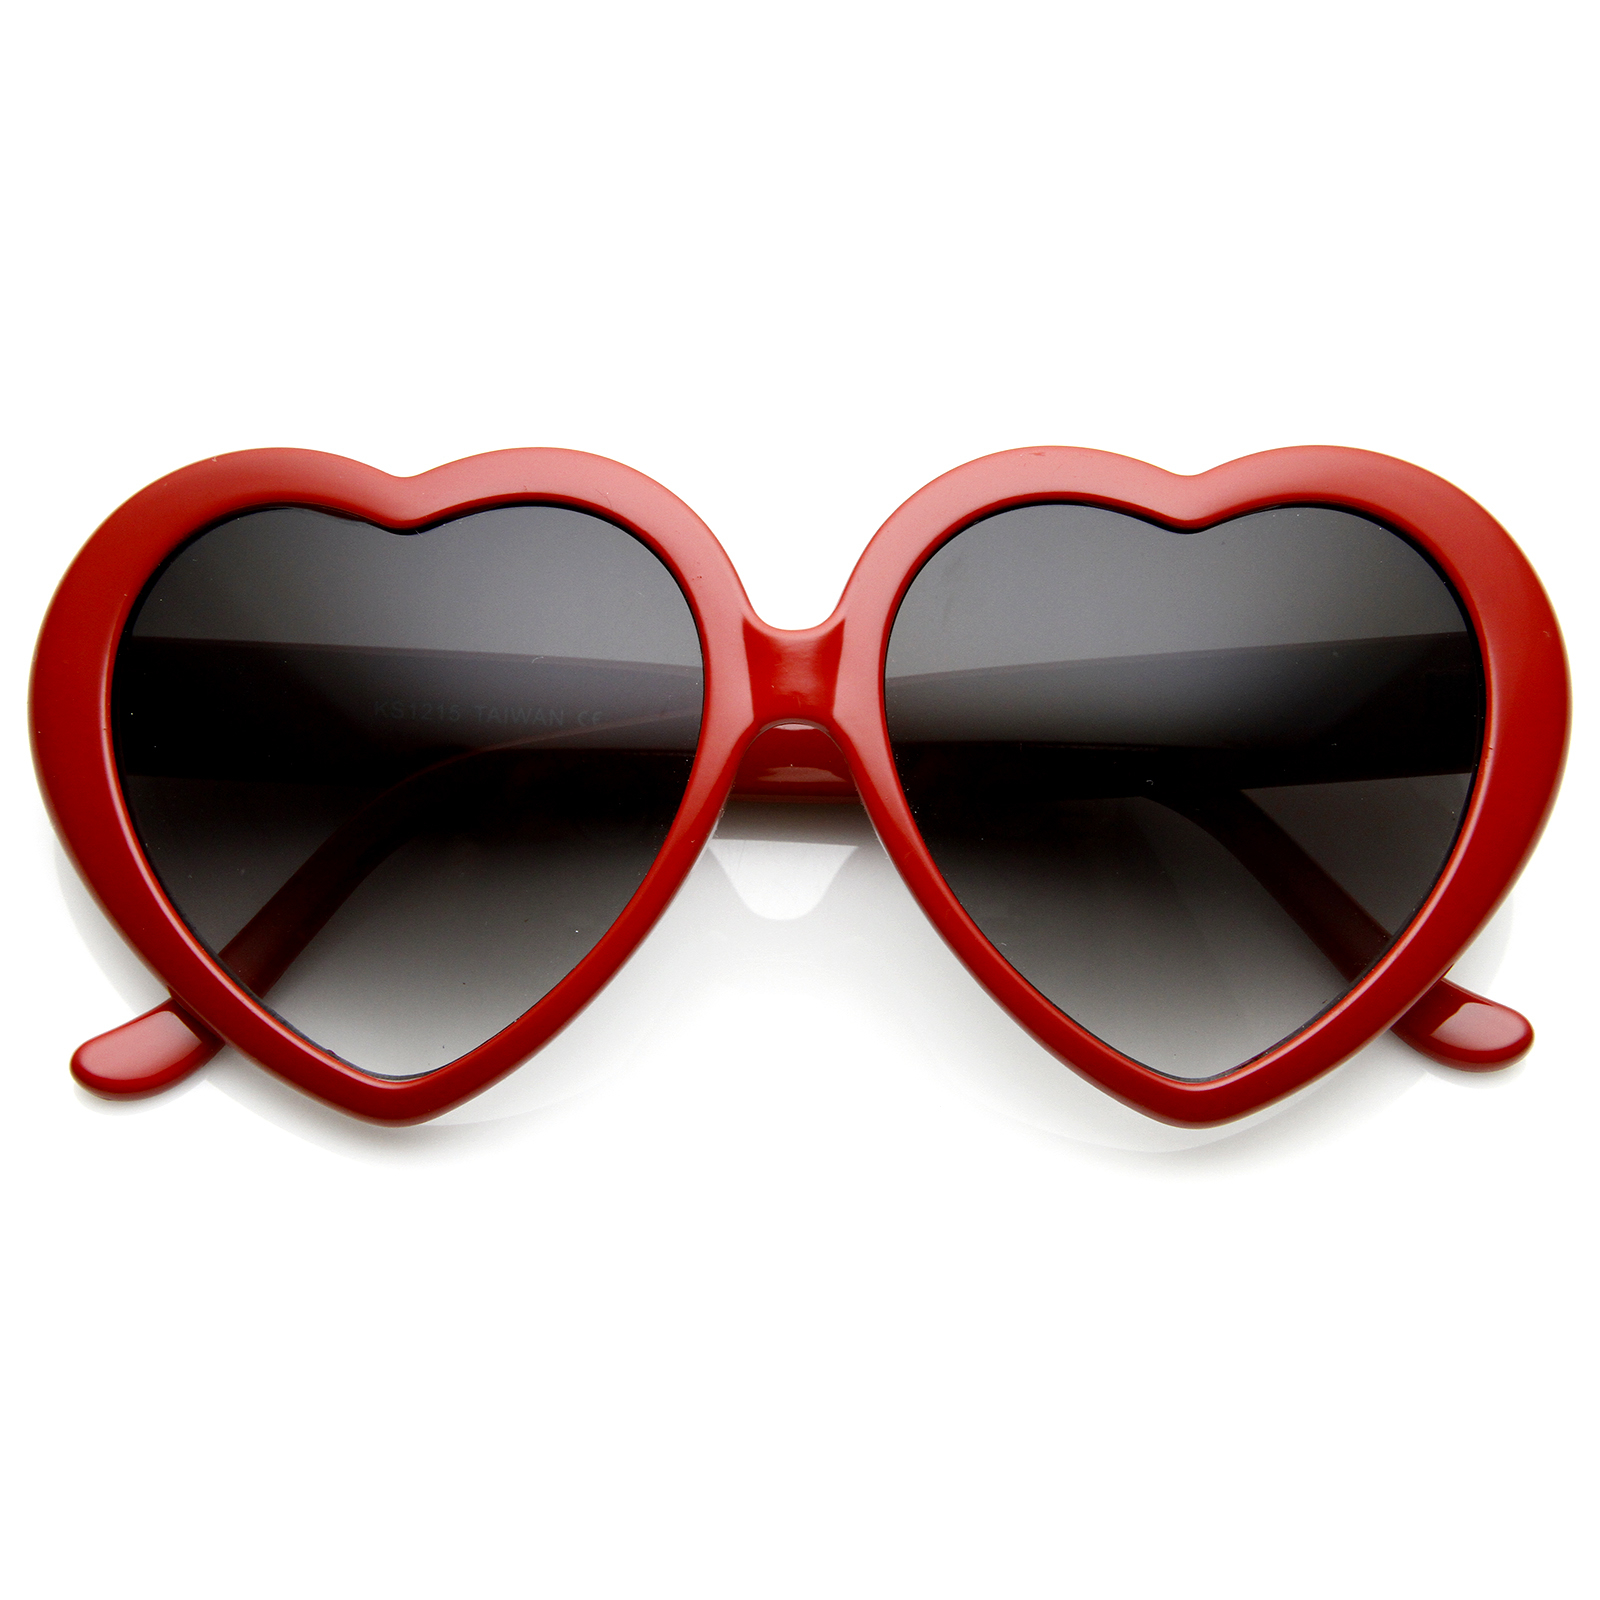 Large Oversized Womens Heart Shaped Sunglasses Cute Love Fashion Eyewear - 8182 - Light Pink